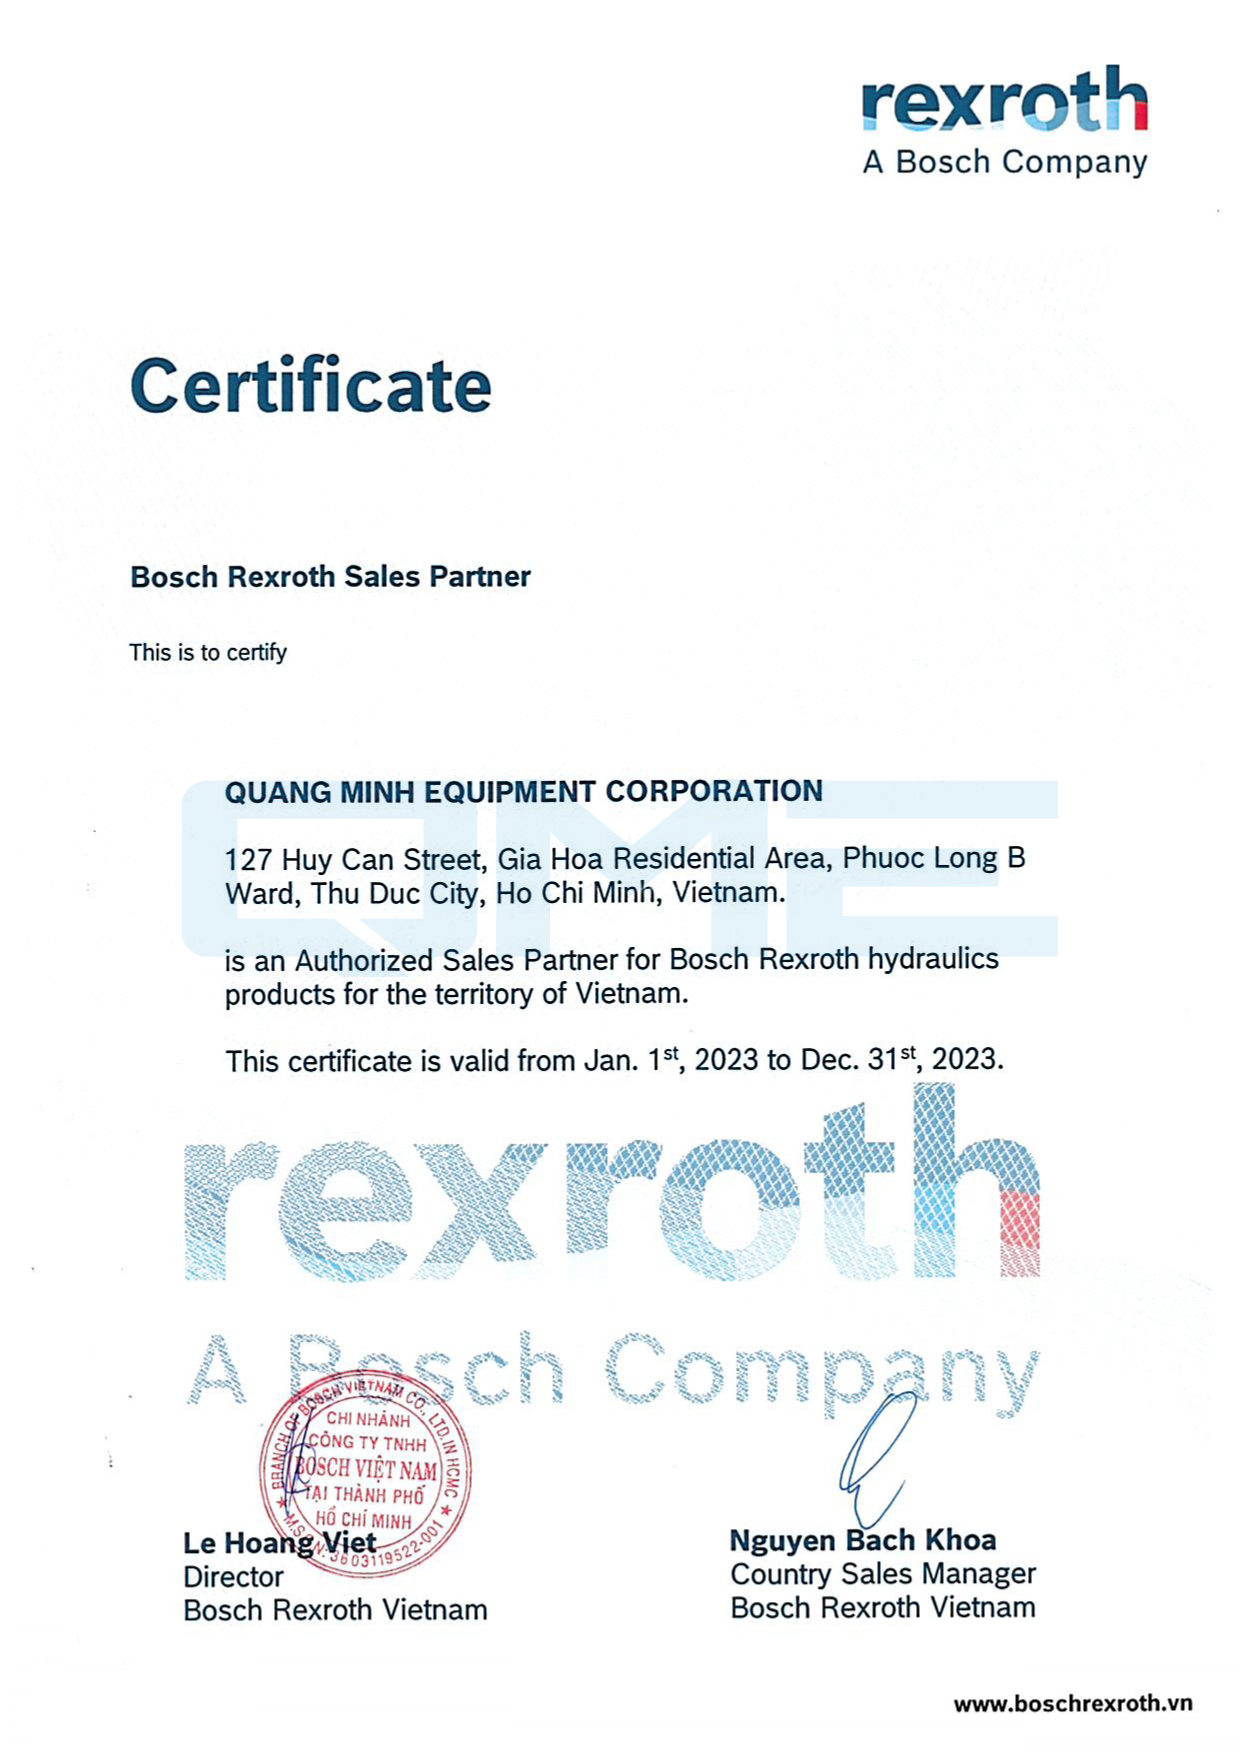 Rexroth's Authorization 2023 - Thư xác nhận QME là Đại lý Rexroth năm 2023